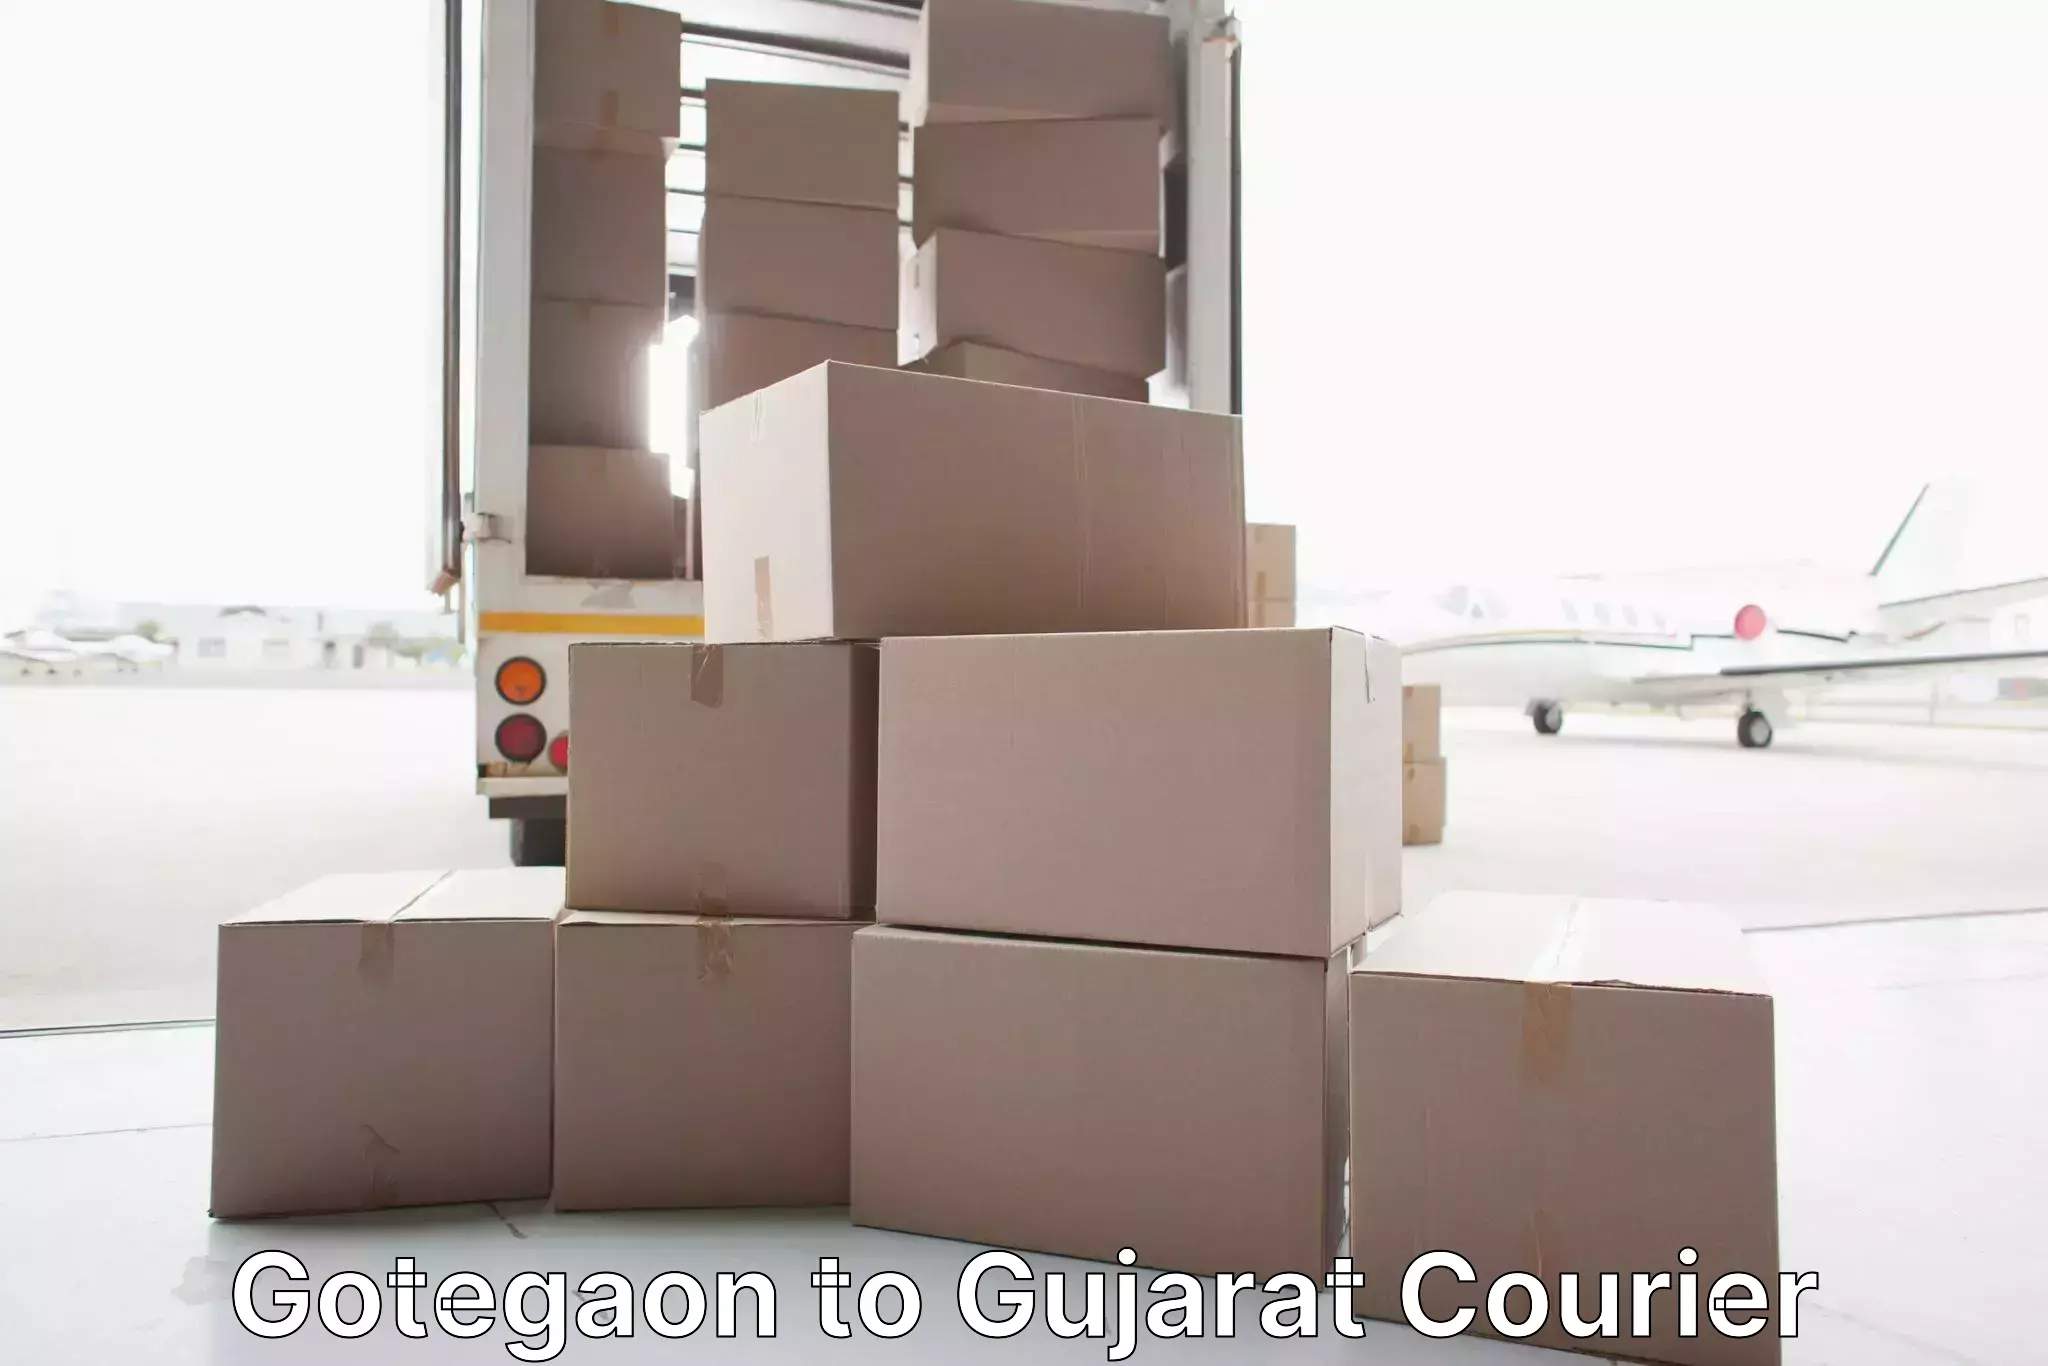 Comprehensive goods transport Gotegaon to Gujarat